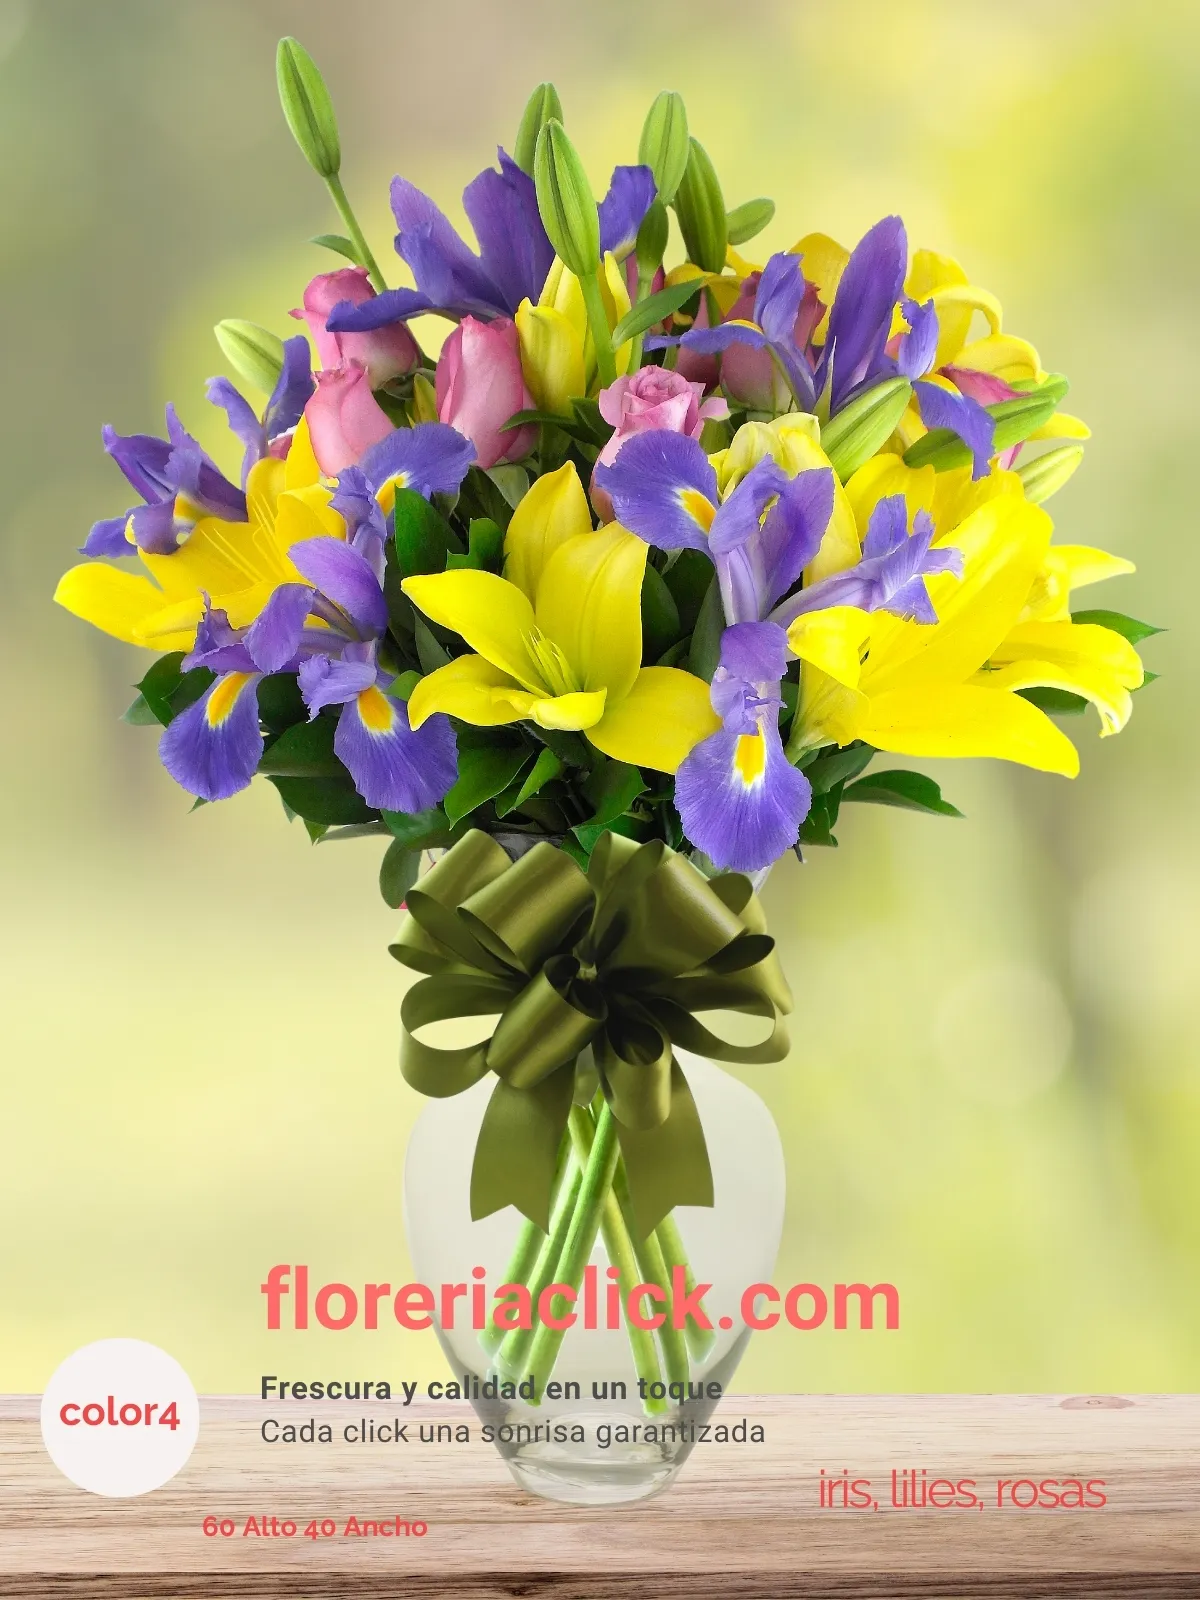 Arreglo Floral 35 Flores con Iris, Rosas y Lilies